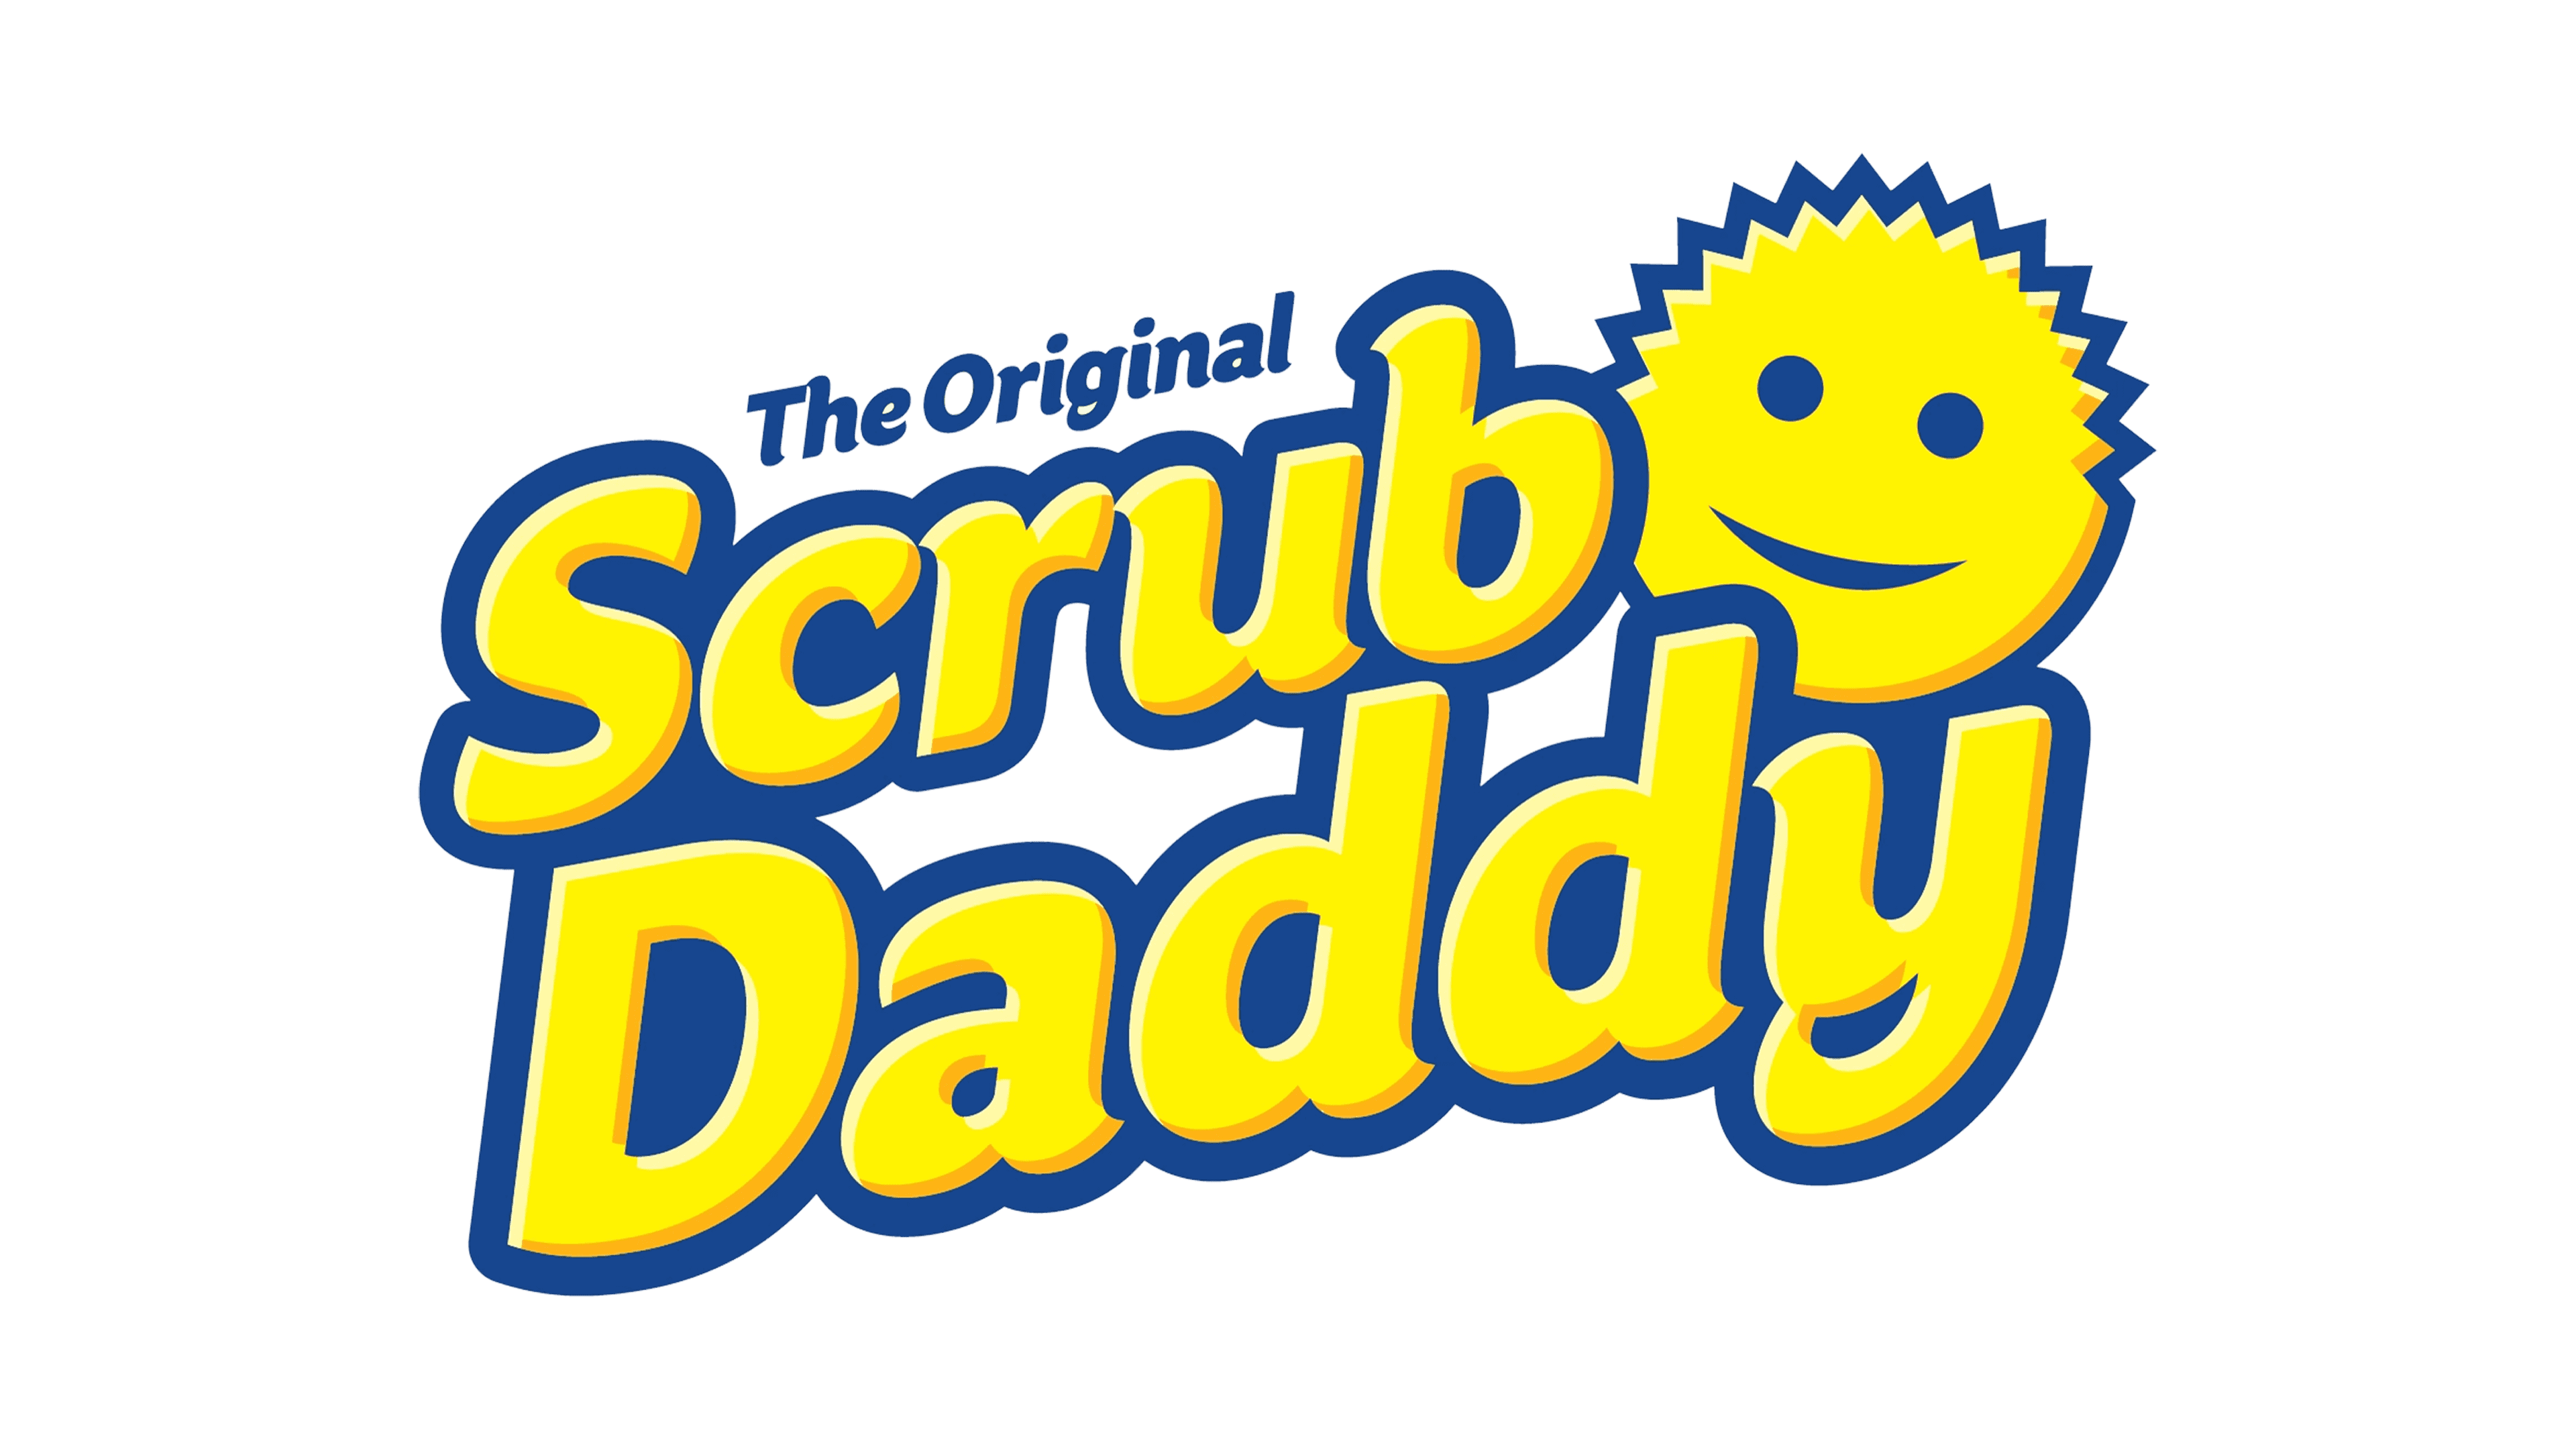 Scrub Daddy Cat